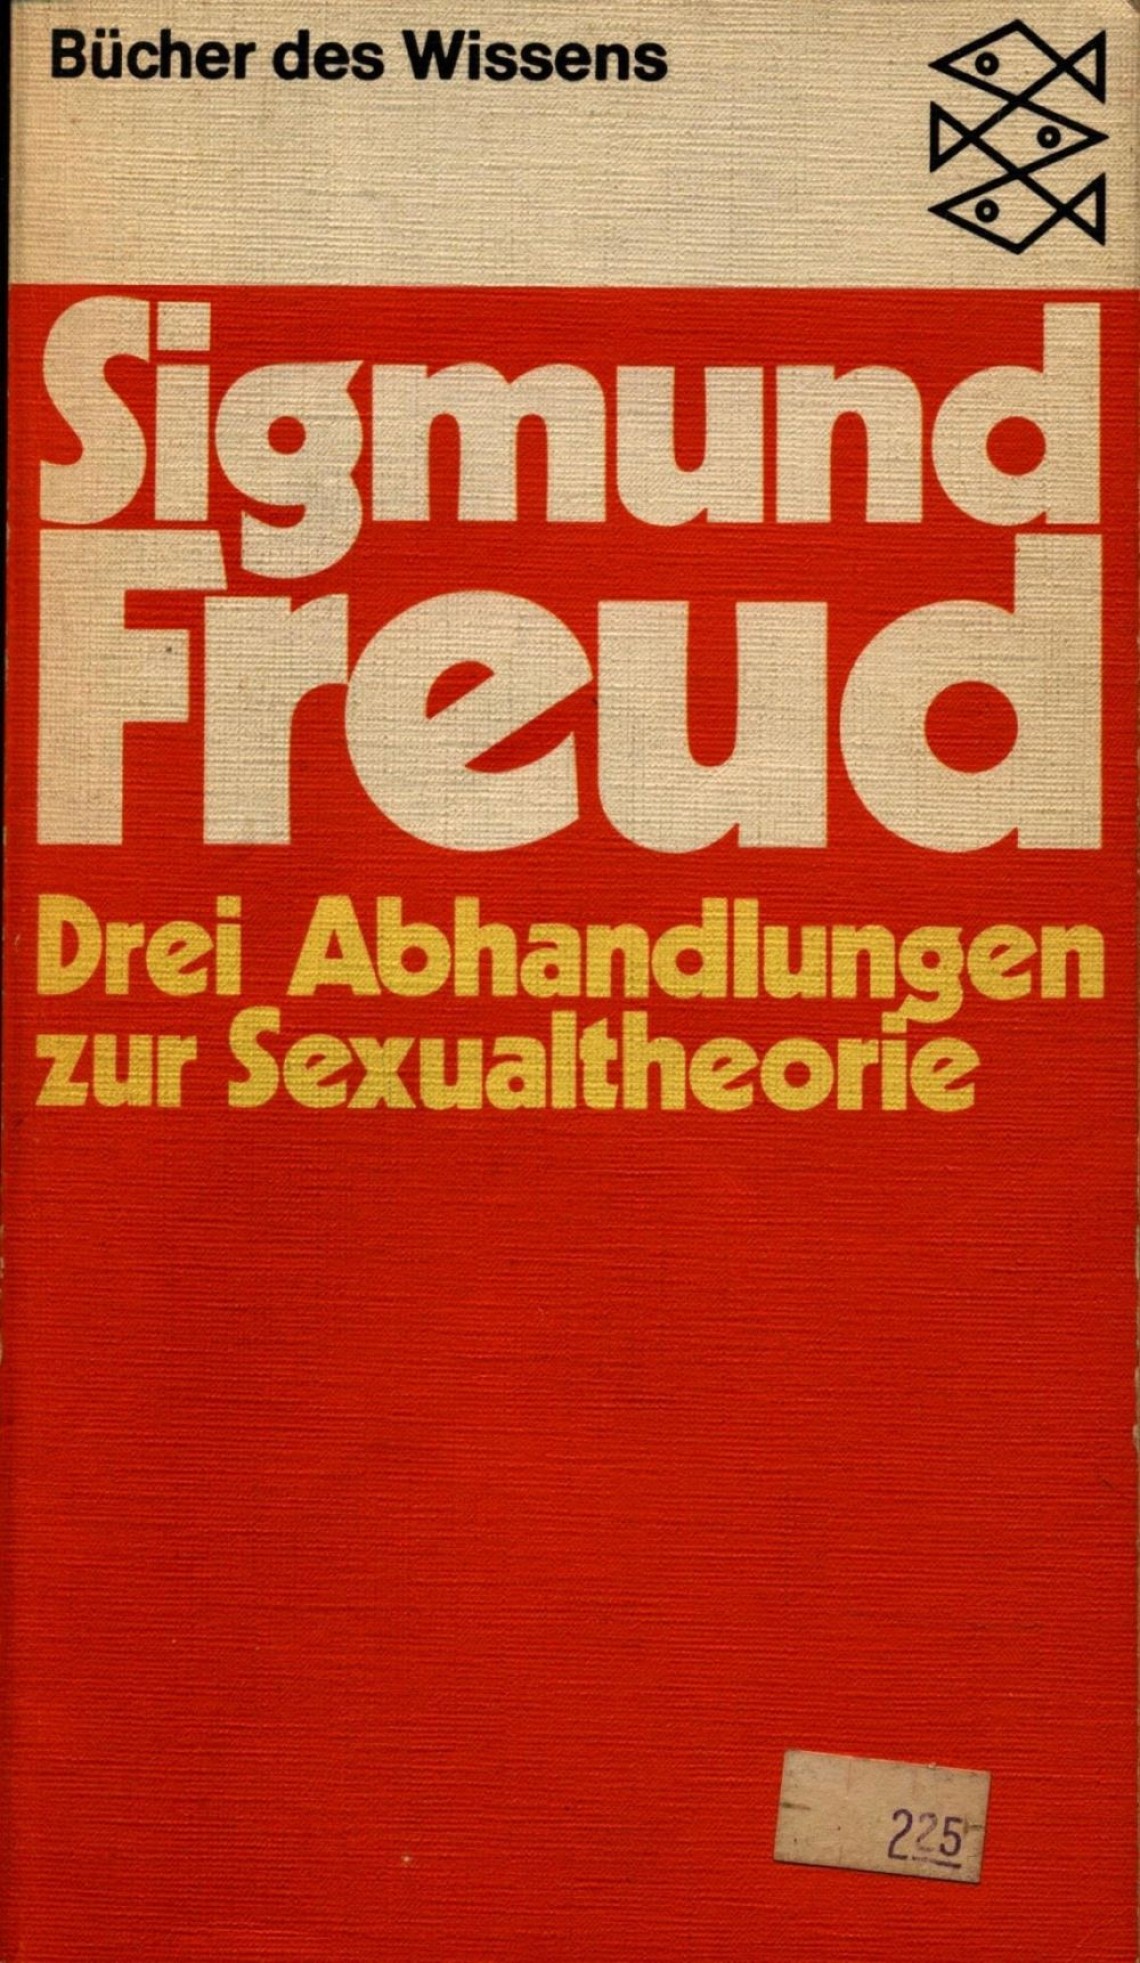 Sigmund Freund, Drei Abhandlungen zur Sexualtheorie